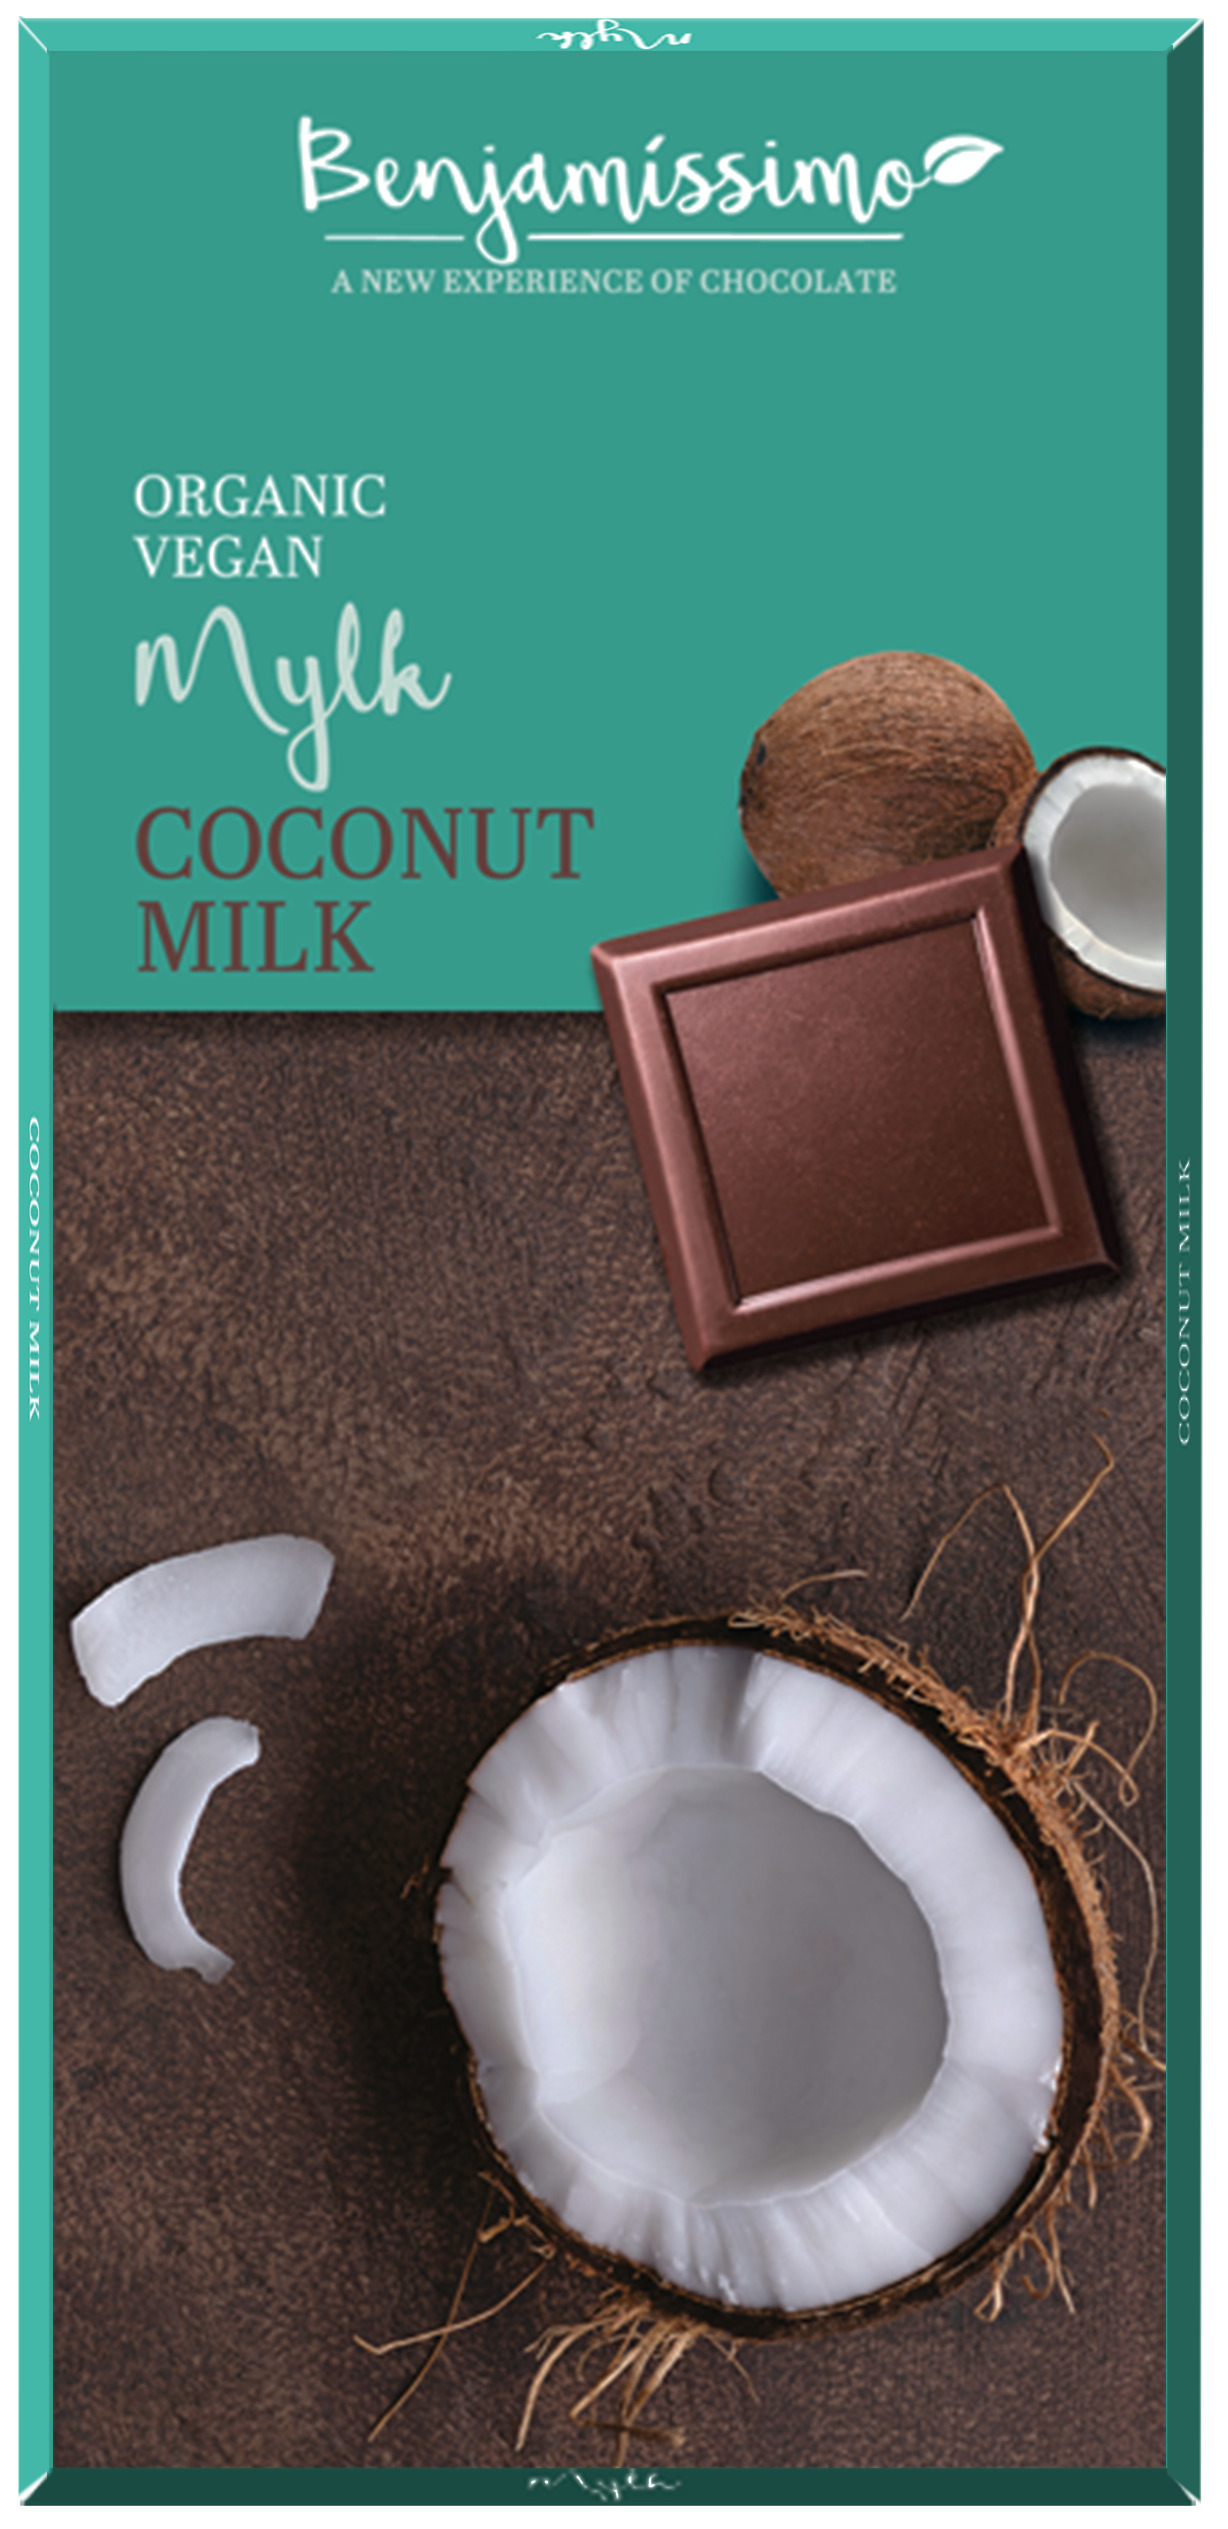 <h2><span style="font-size: 18.72px;">Ciocolata cu cocos bio, 70g, Benjamissimo</span></h2><p>Ciocolata din ingrediente provenite din agricultura ecologica, fara gluten. Traieste o noua experienta a gustului cu gama de ciocolata Benjamissimo.</p><p><strong>Ingrediente:</strong> zahar din trestie*, masa de cacao*, lapte de cocos praf* 15%, unt de cacao*, lecitina de floarea soarelui*.<br />*din agricultura ecologica</p><p><strong>Continut de cacao</strong>: minim 44%.</p><p><strong>Valori nutritionale/100g:</strong><br />Energie: 2455 kj / 589 kcal<br />Grasimi: 40g din care saturate 28g<br />Carbohidrati: 46g din care zaharuri: 41g<br />Proteine: 6.6g<br />Sare: 0g</p><p>Poate contine urme de nuci.</p><p>A se feri de lumina directa a soarelui.</p><p>Produs certificat ecologic</p><p>70g</p>